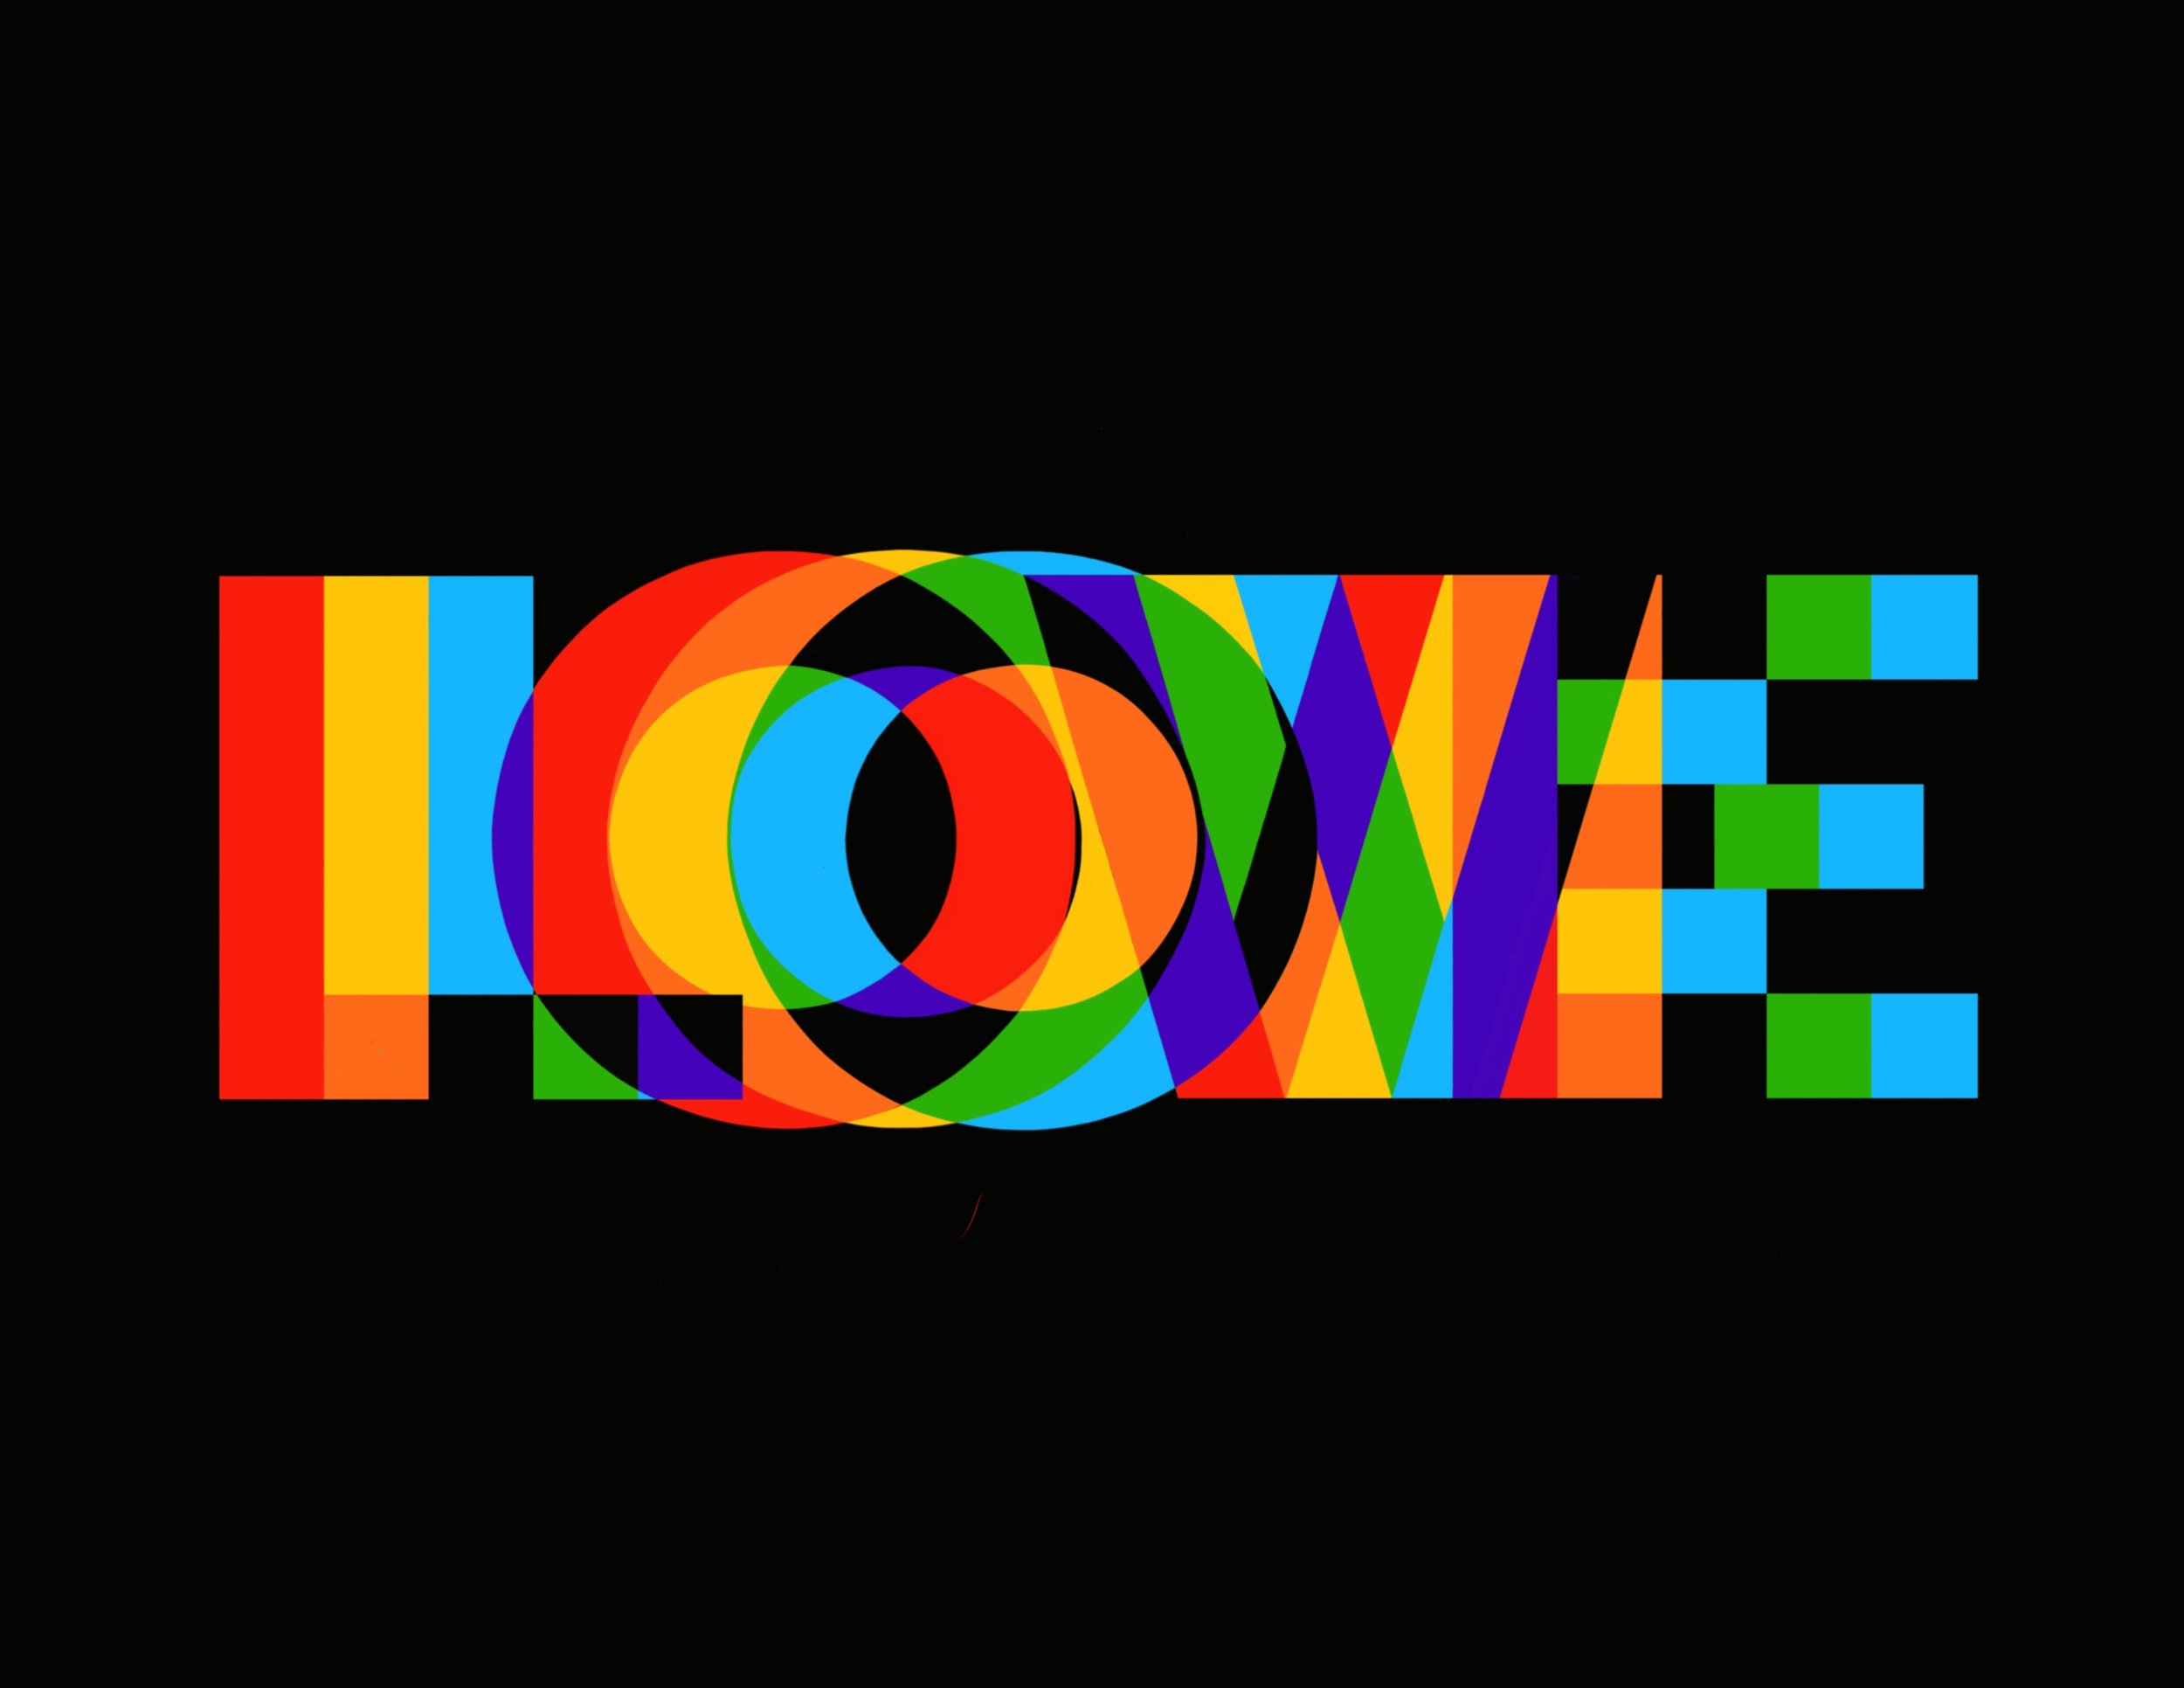 rainbow LOVE on black 8x11.jpeg